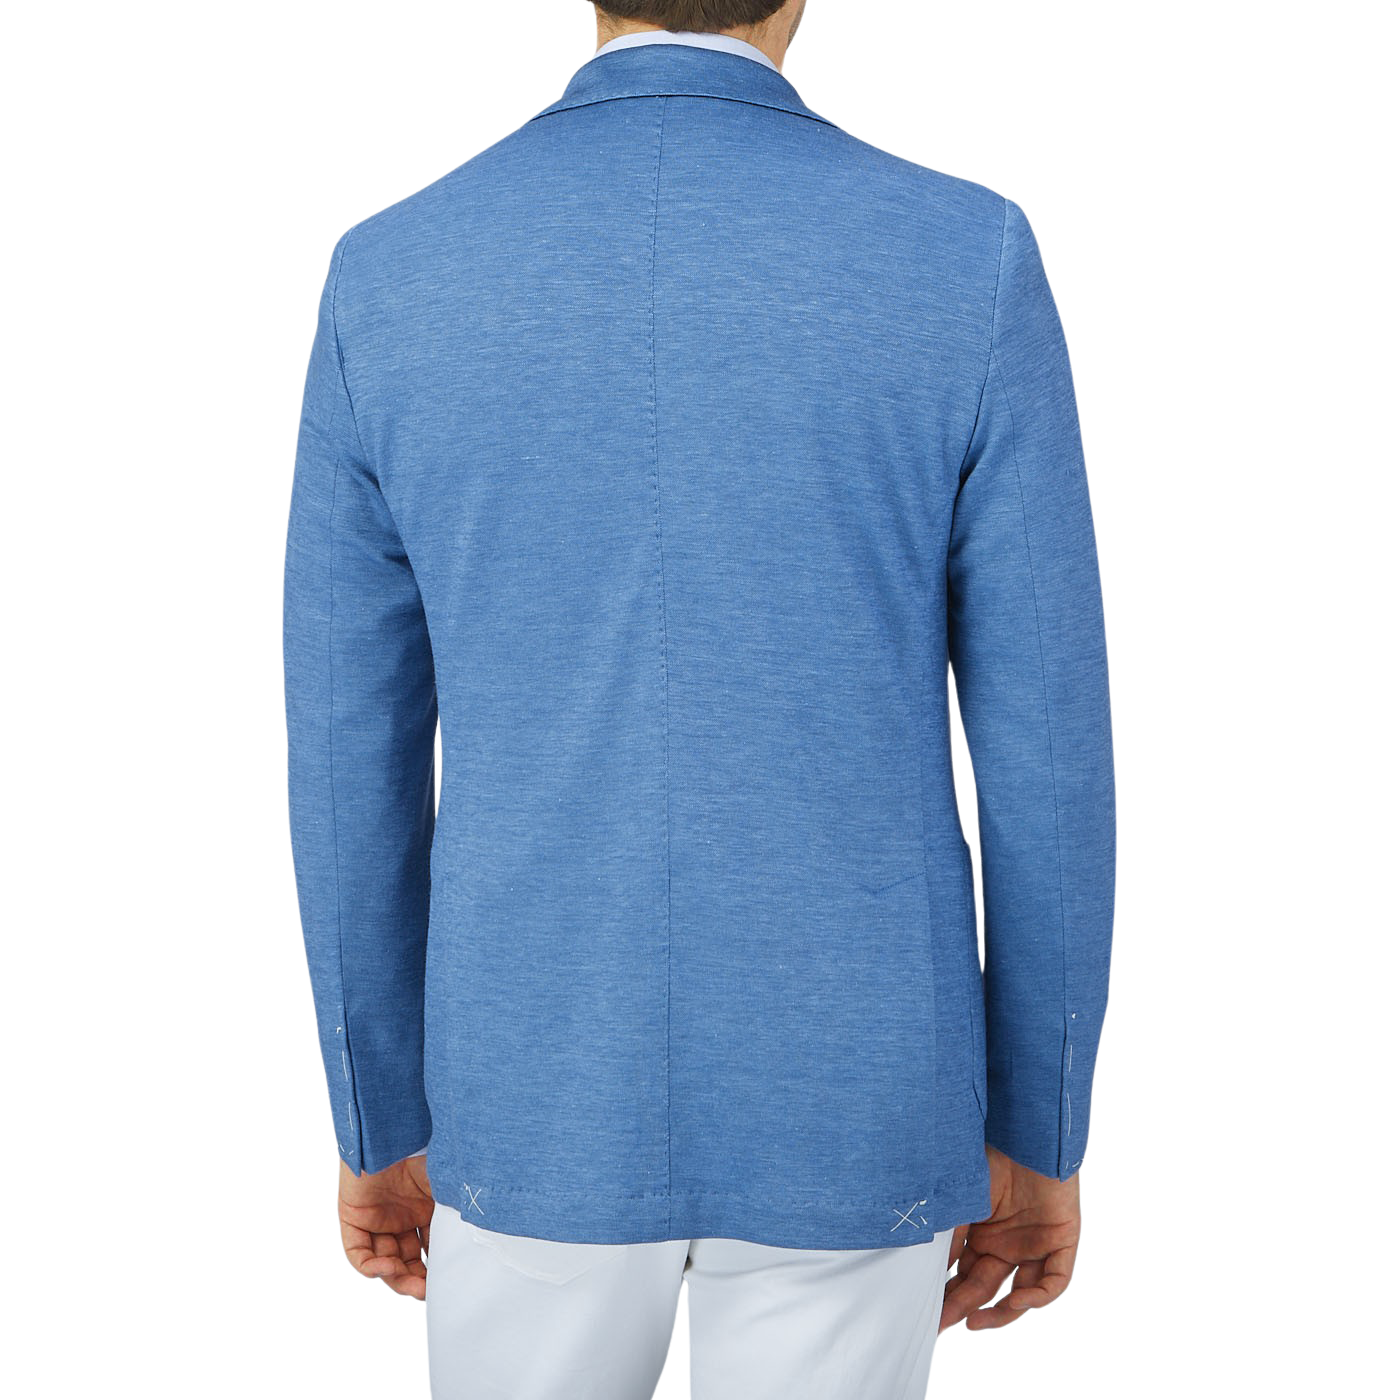 The back view of a man wearing a Maurizio Baldassari Light Blue Wool Linen Silk Jersey Blazer.